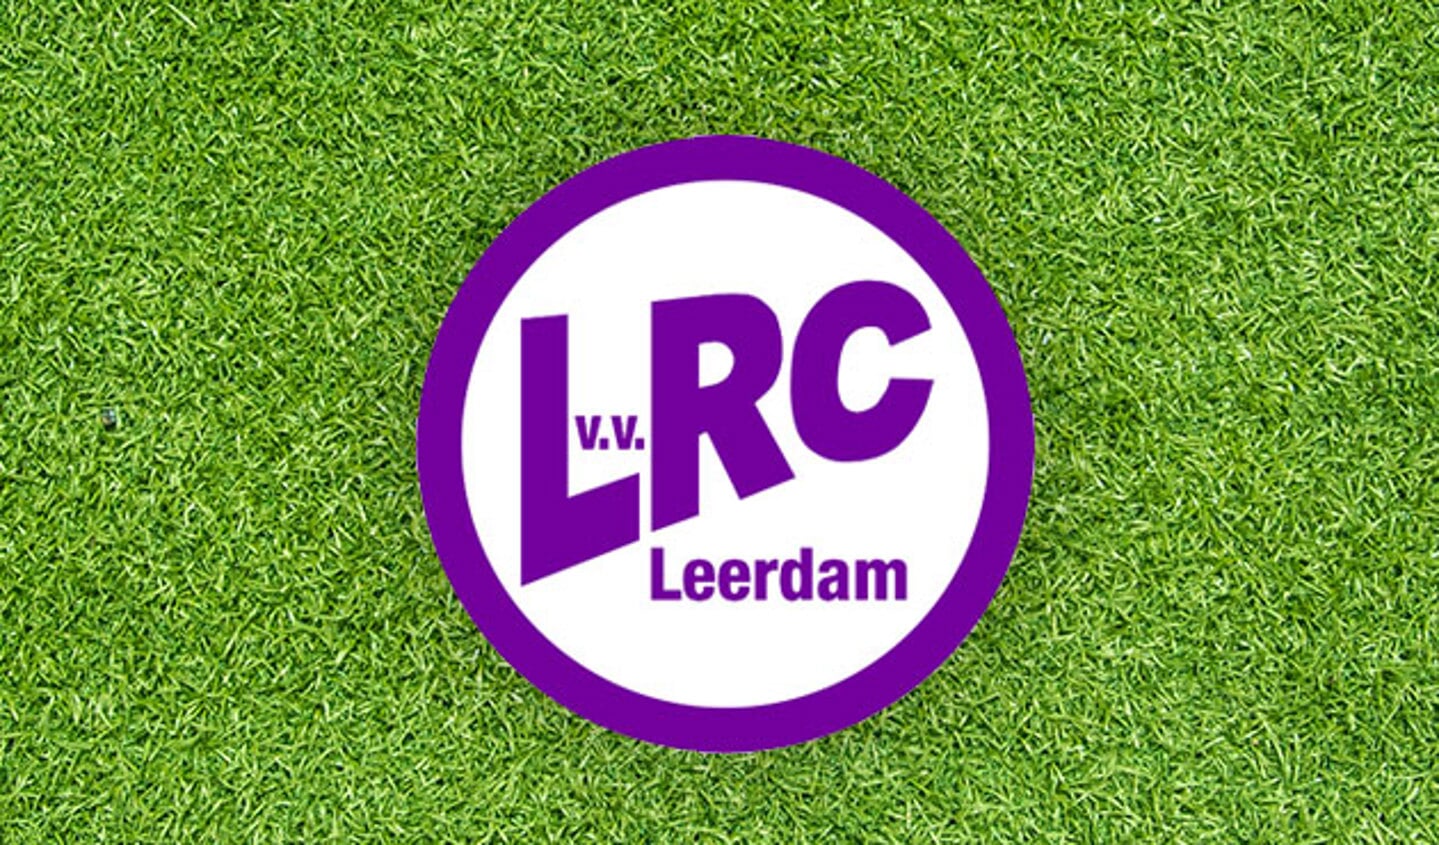 Gerritsen en Bieri geven jawoord aan LRC Leerdam